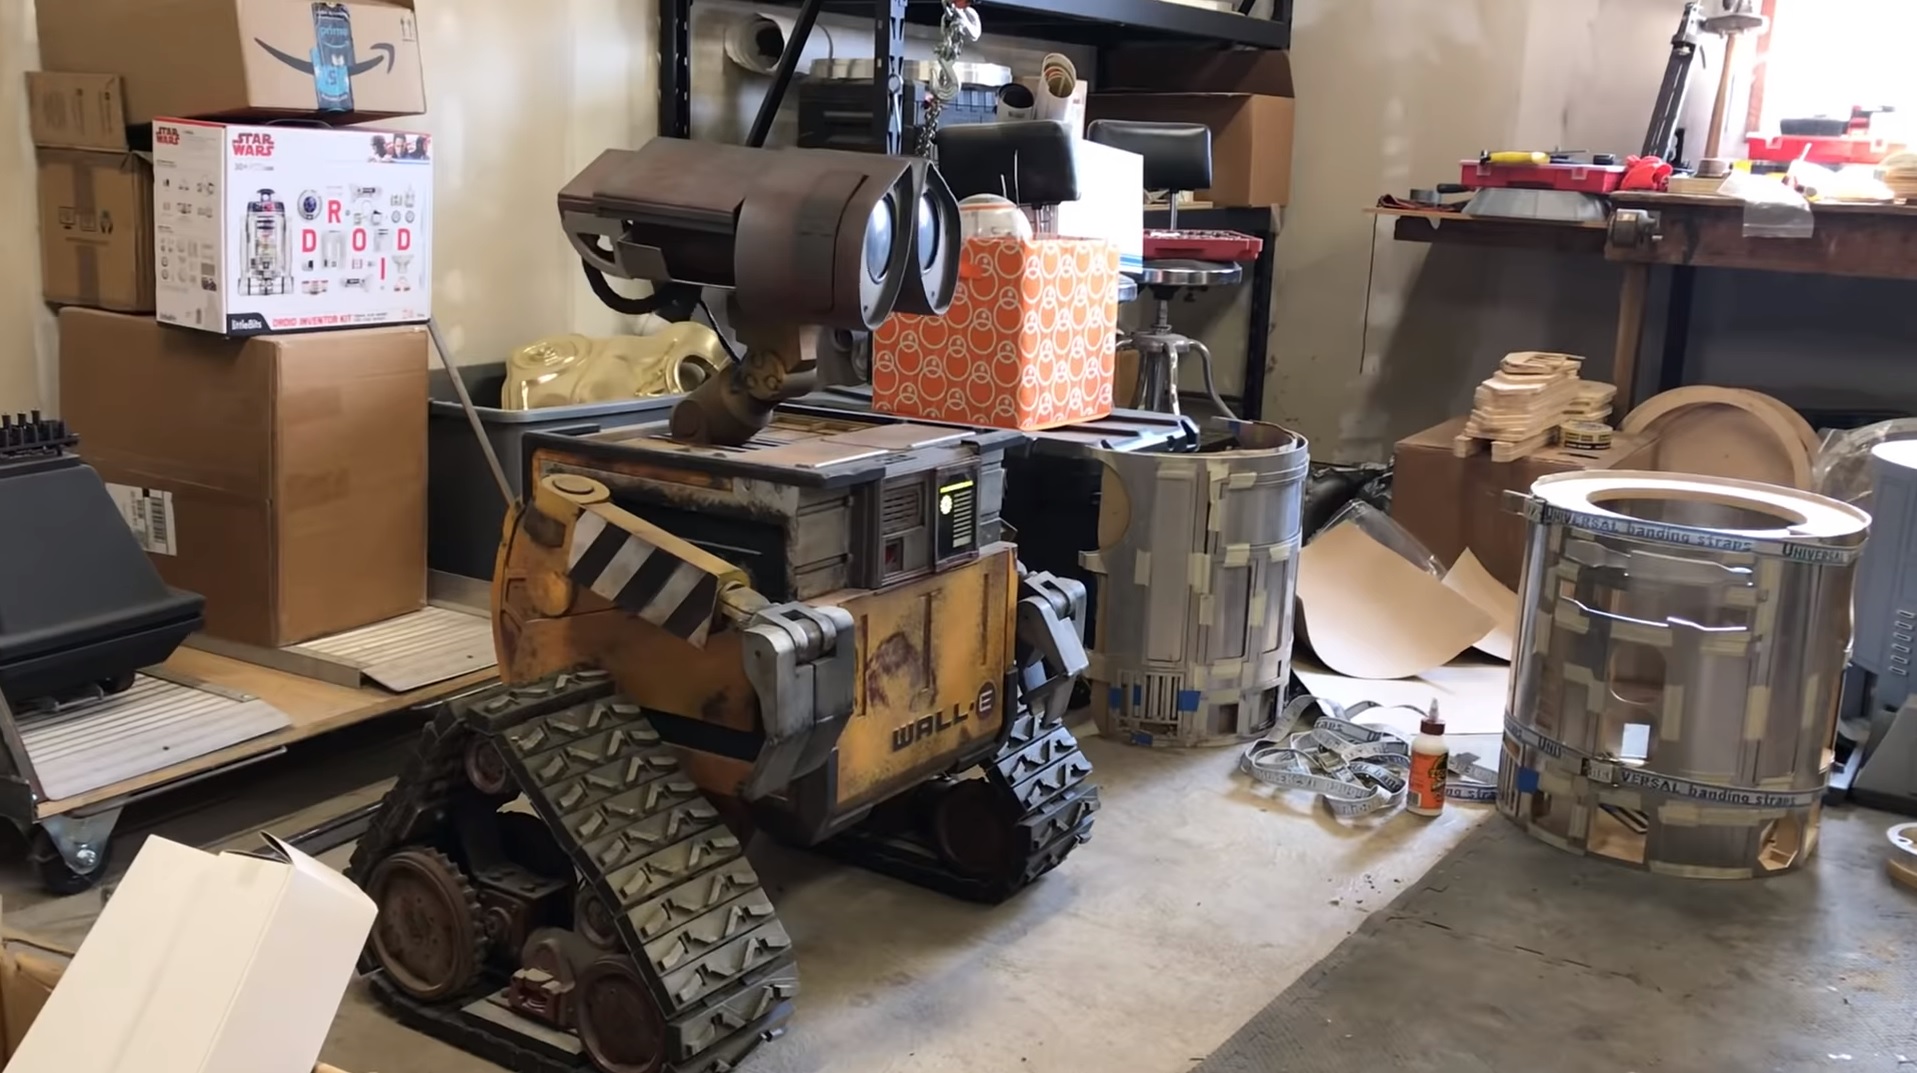 Une adorable réplique du robot Wall-E fait fondre les internautes